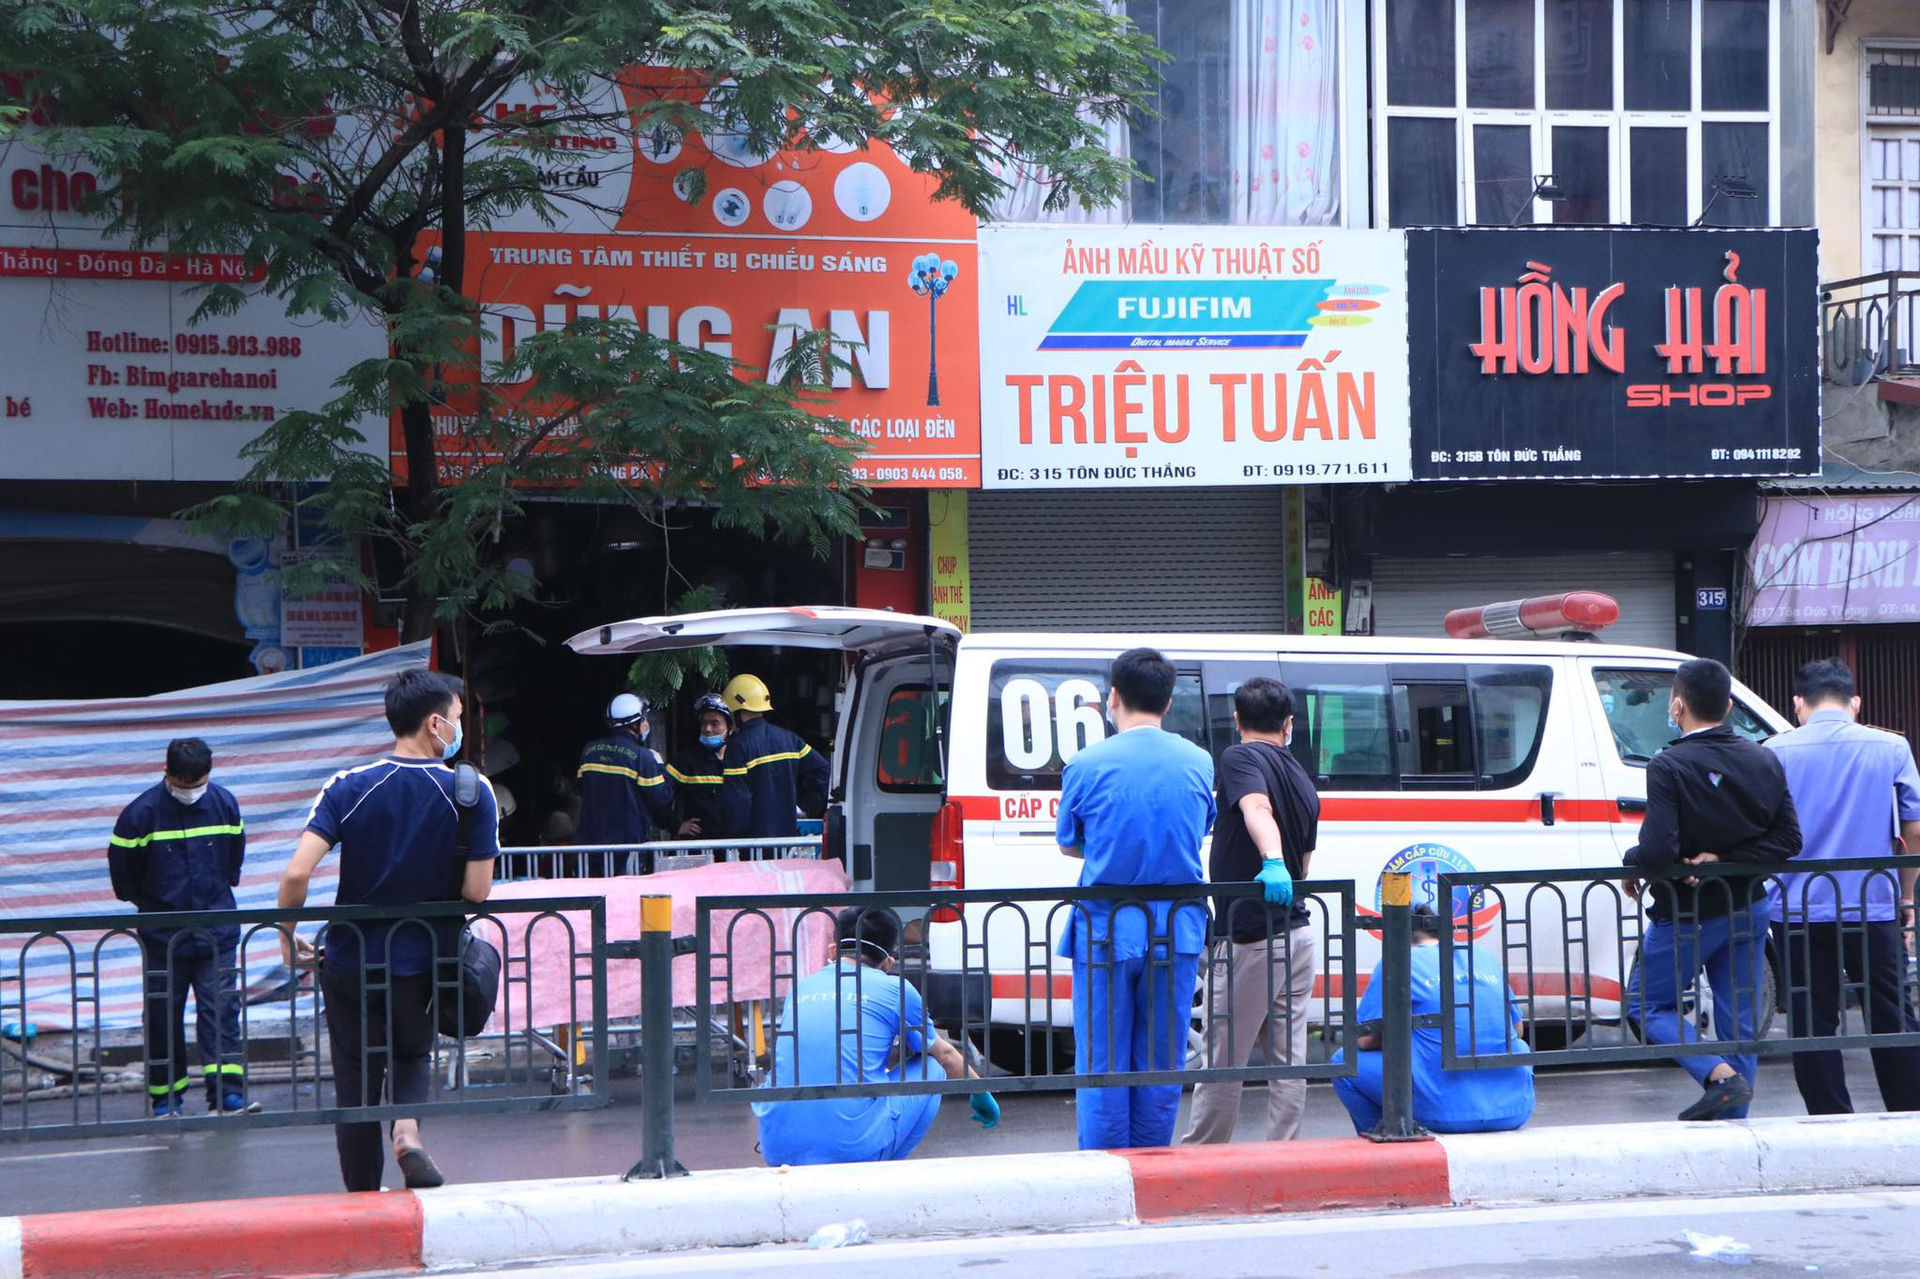 Hà Nội: Cháy lớn ở cửa hàng đồ sơ sinh, 4 người trong gia đình tử vong - 4